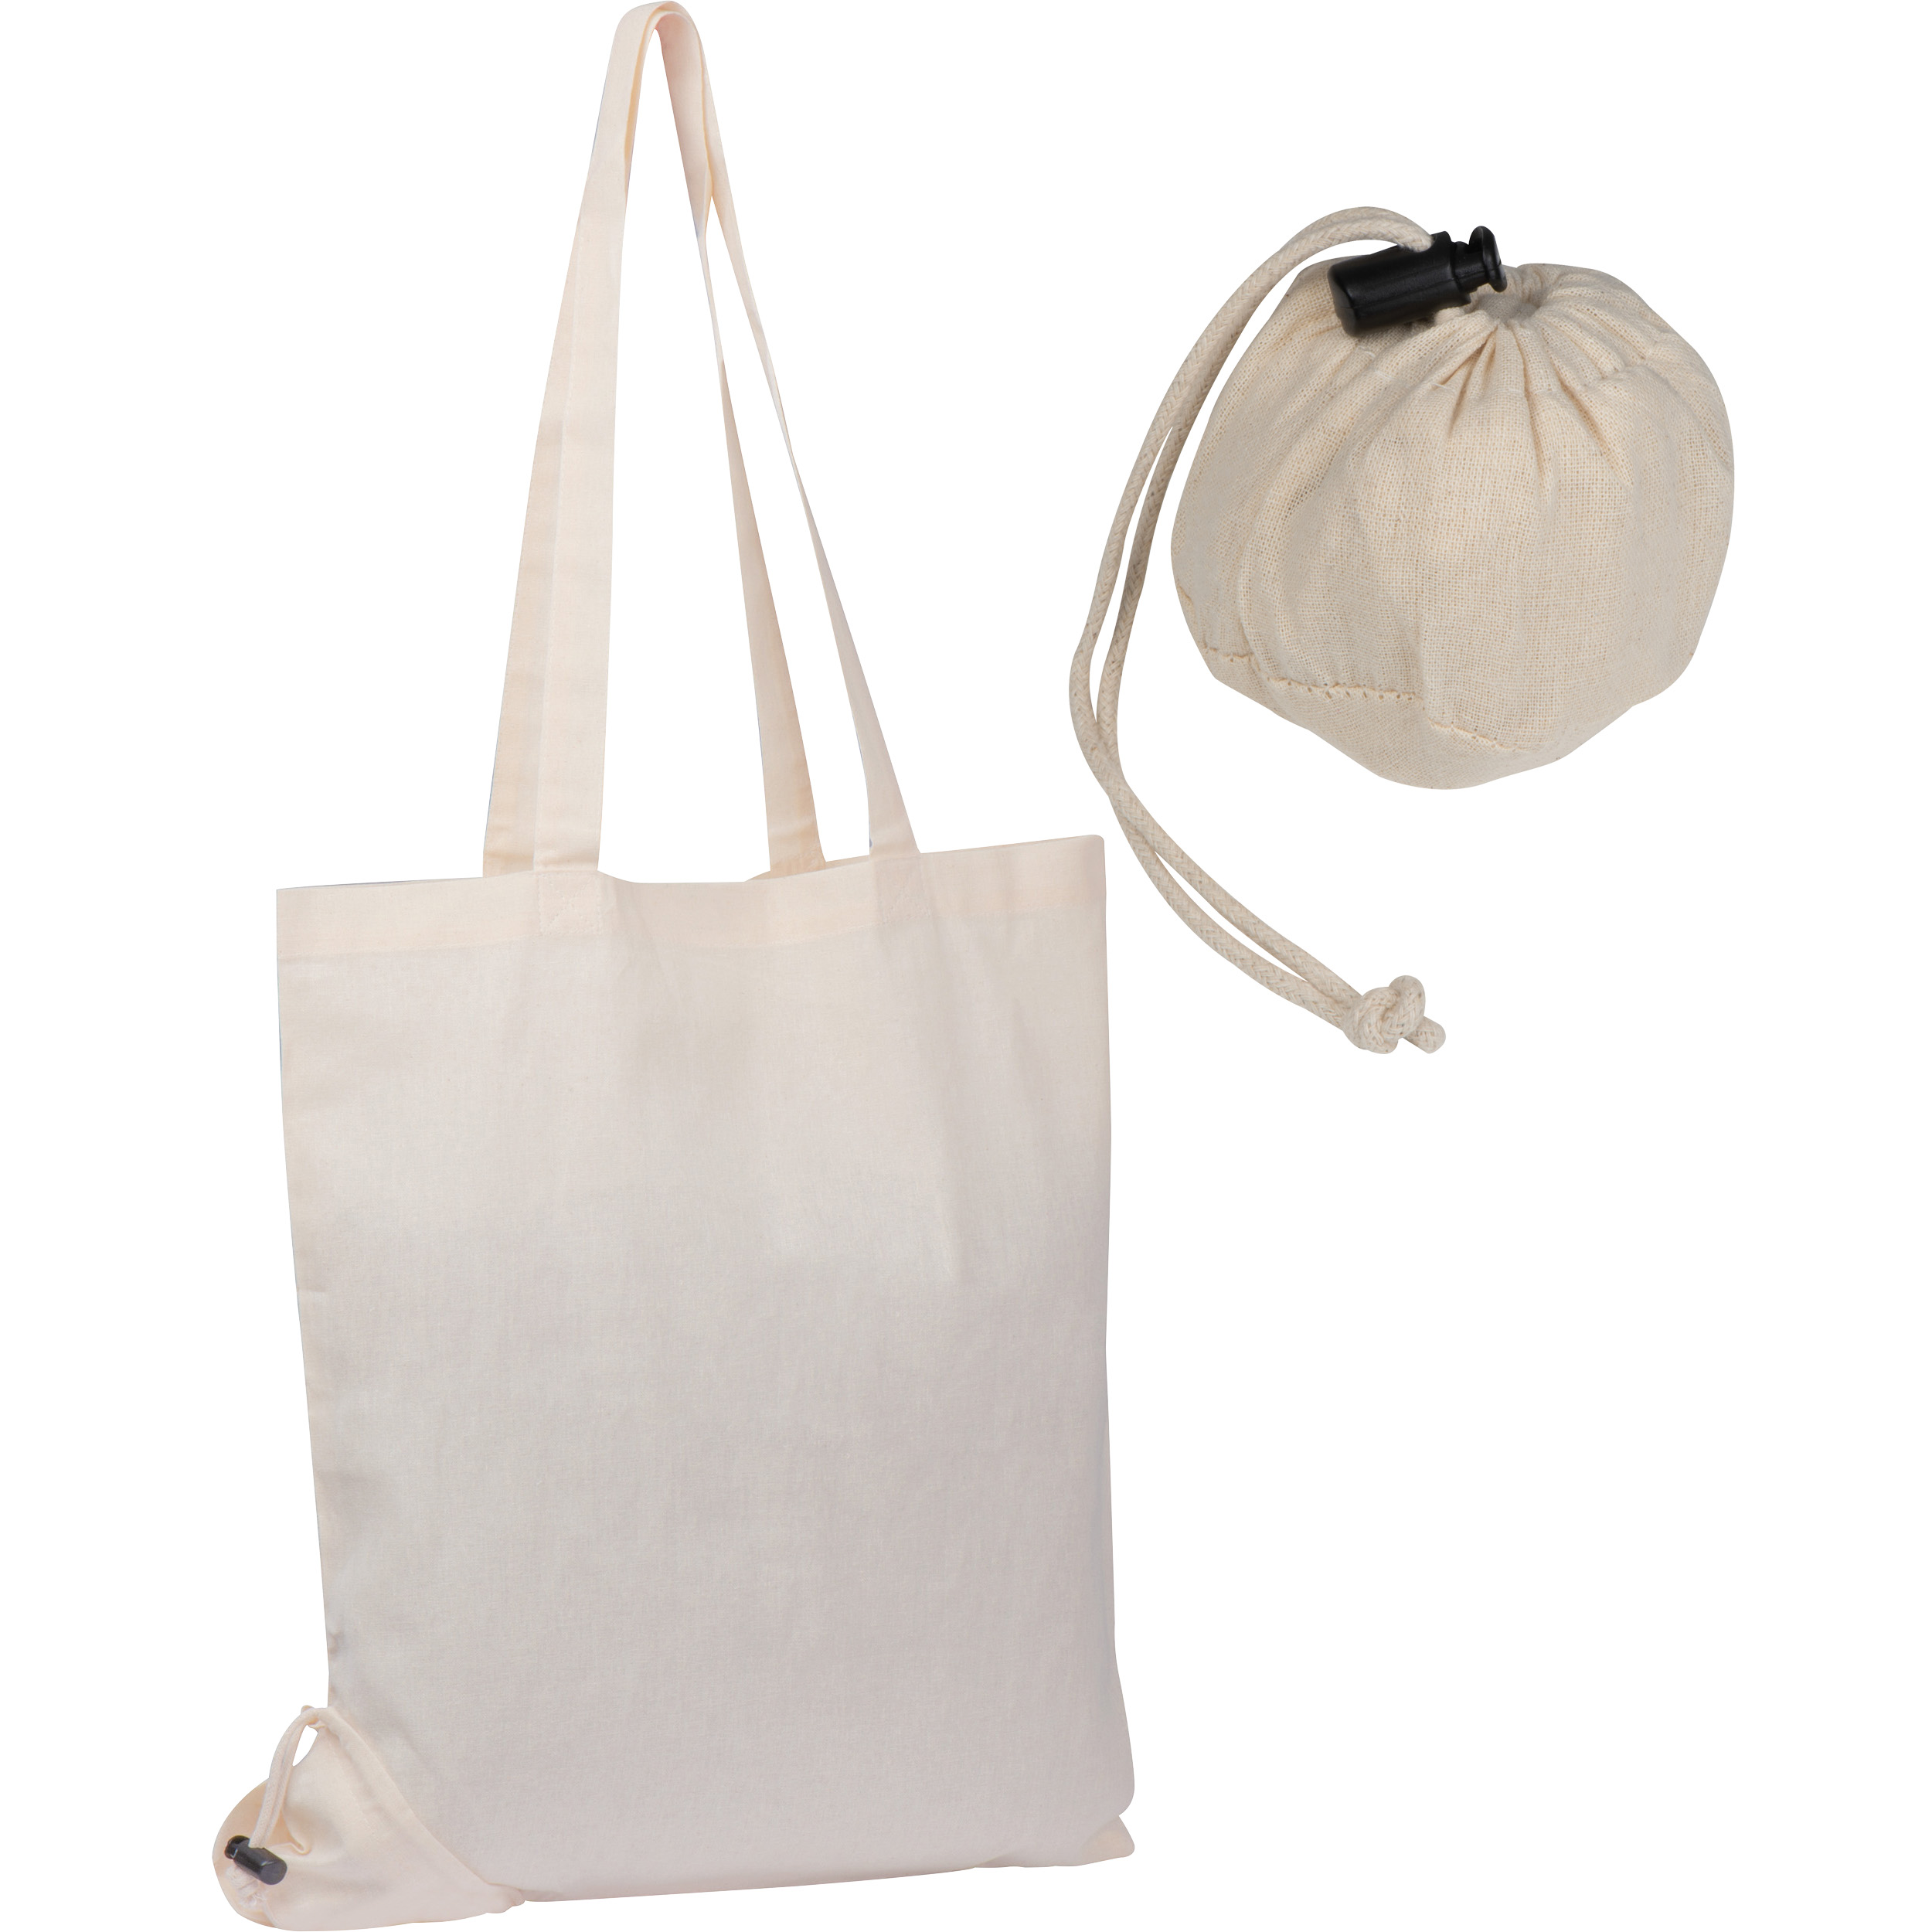 Foldable cotton bag